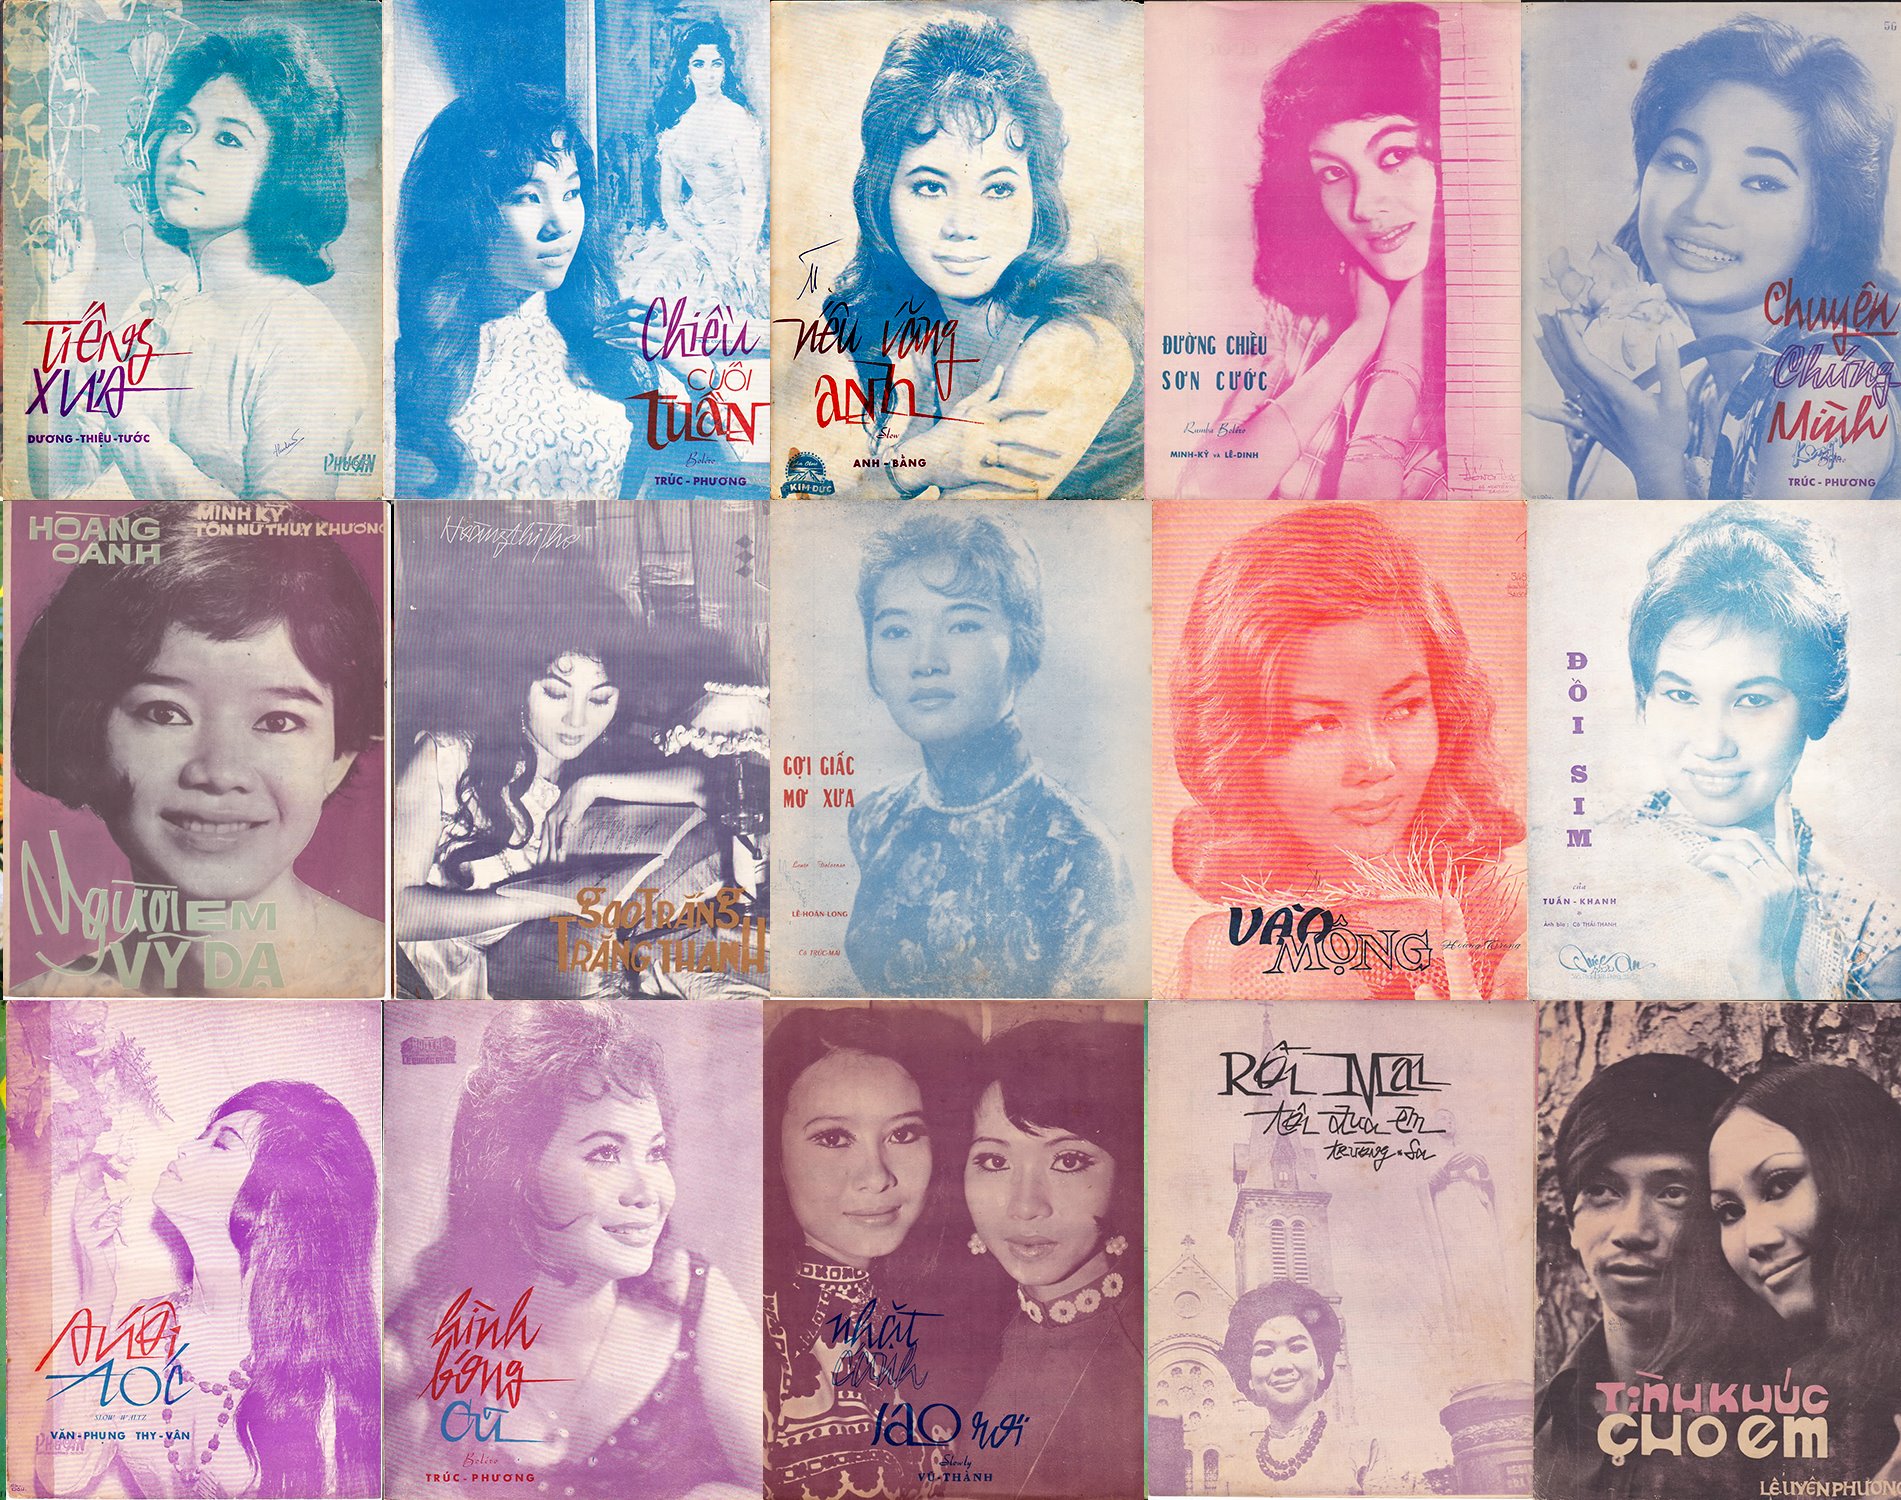 Danh ca Thanh Thúy - Nghệ sĩ xuất hiện nhiều nhất trên hình bìa tờ nhạc xưa